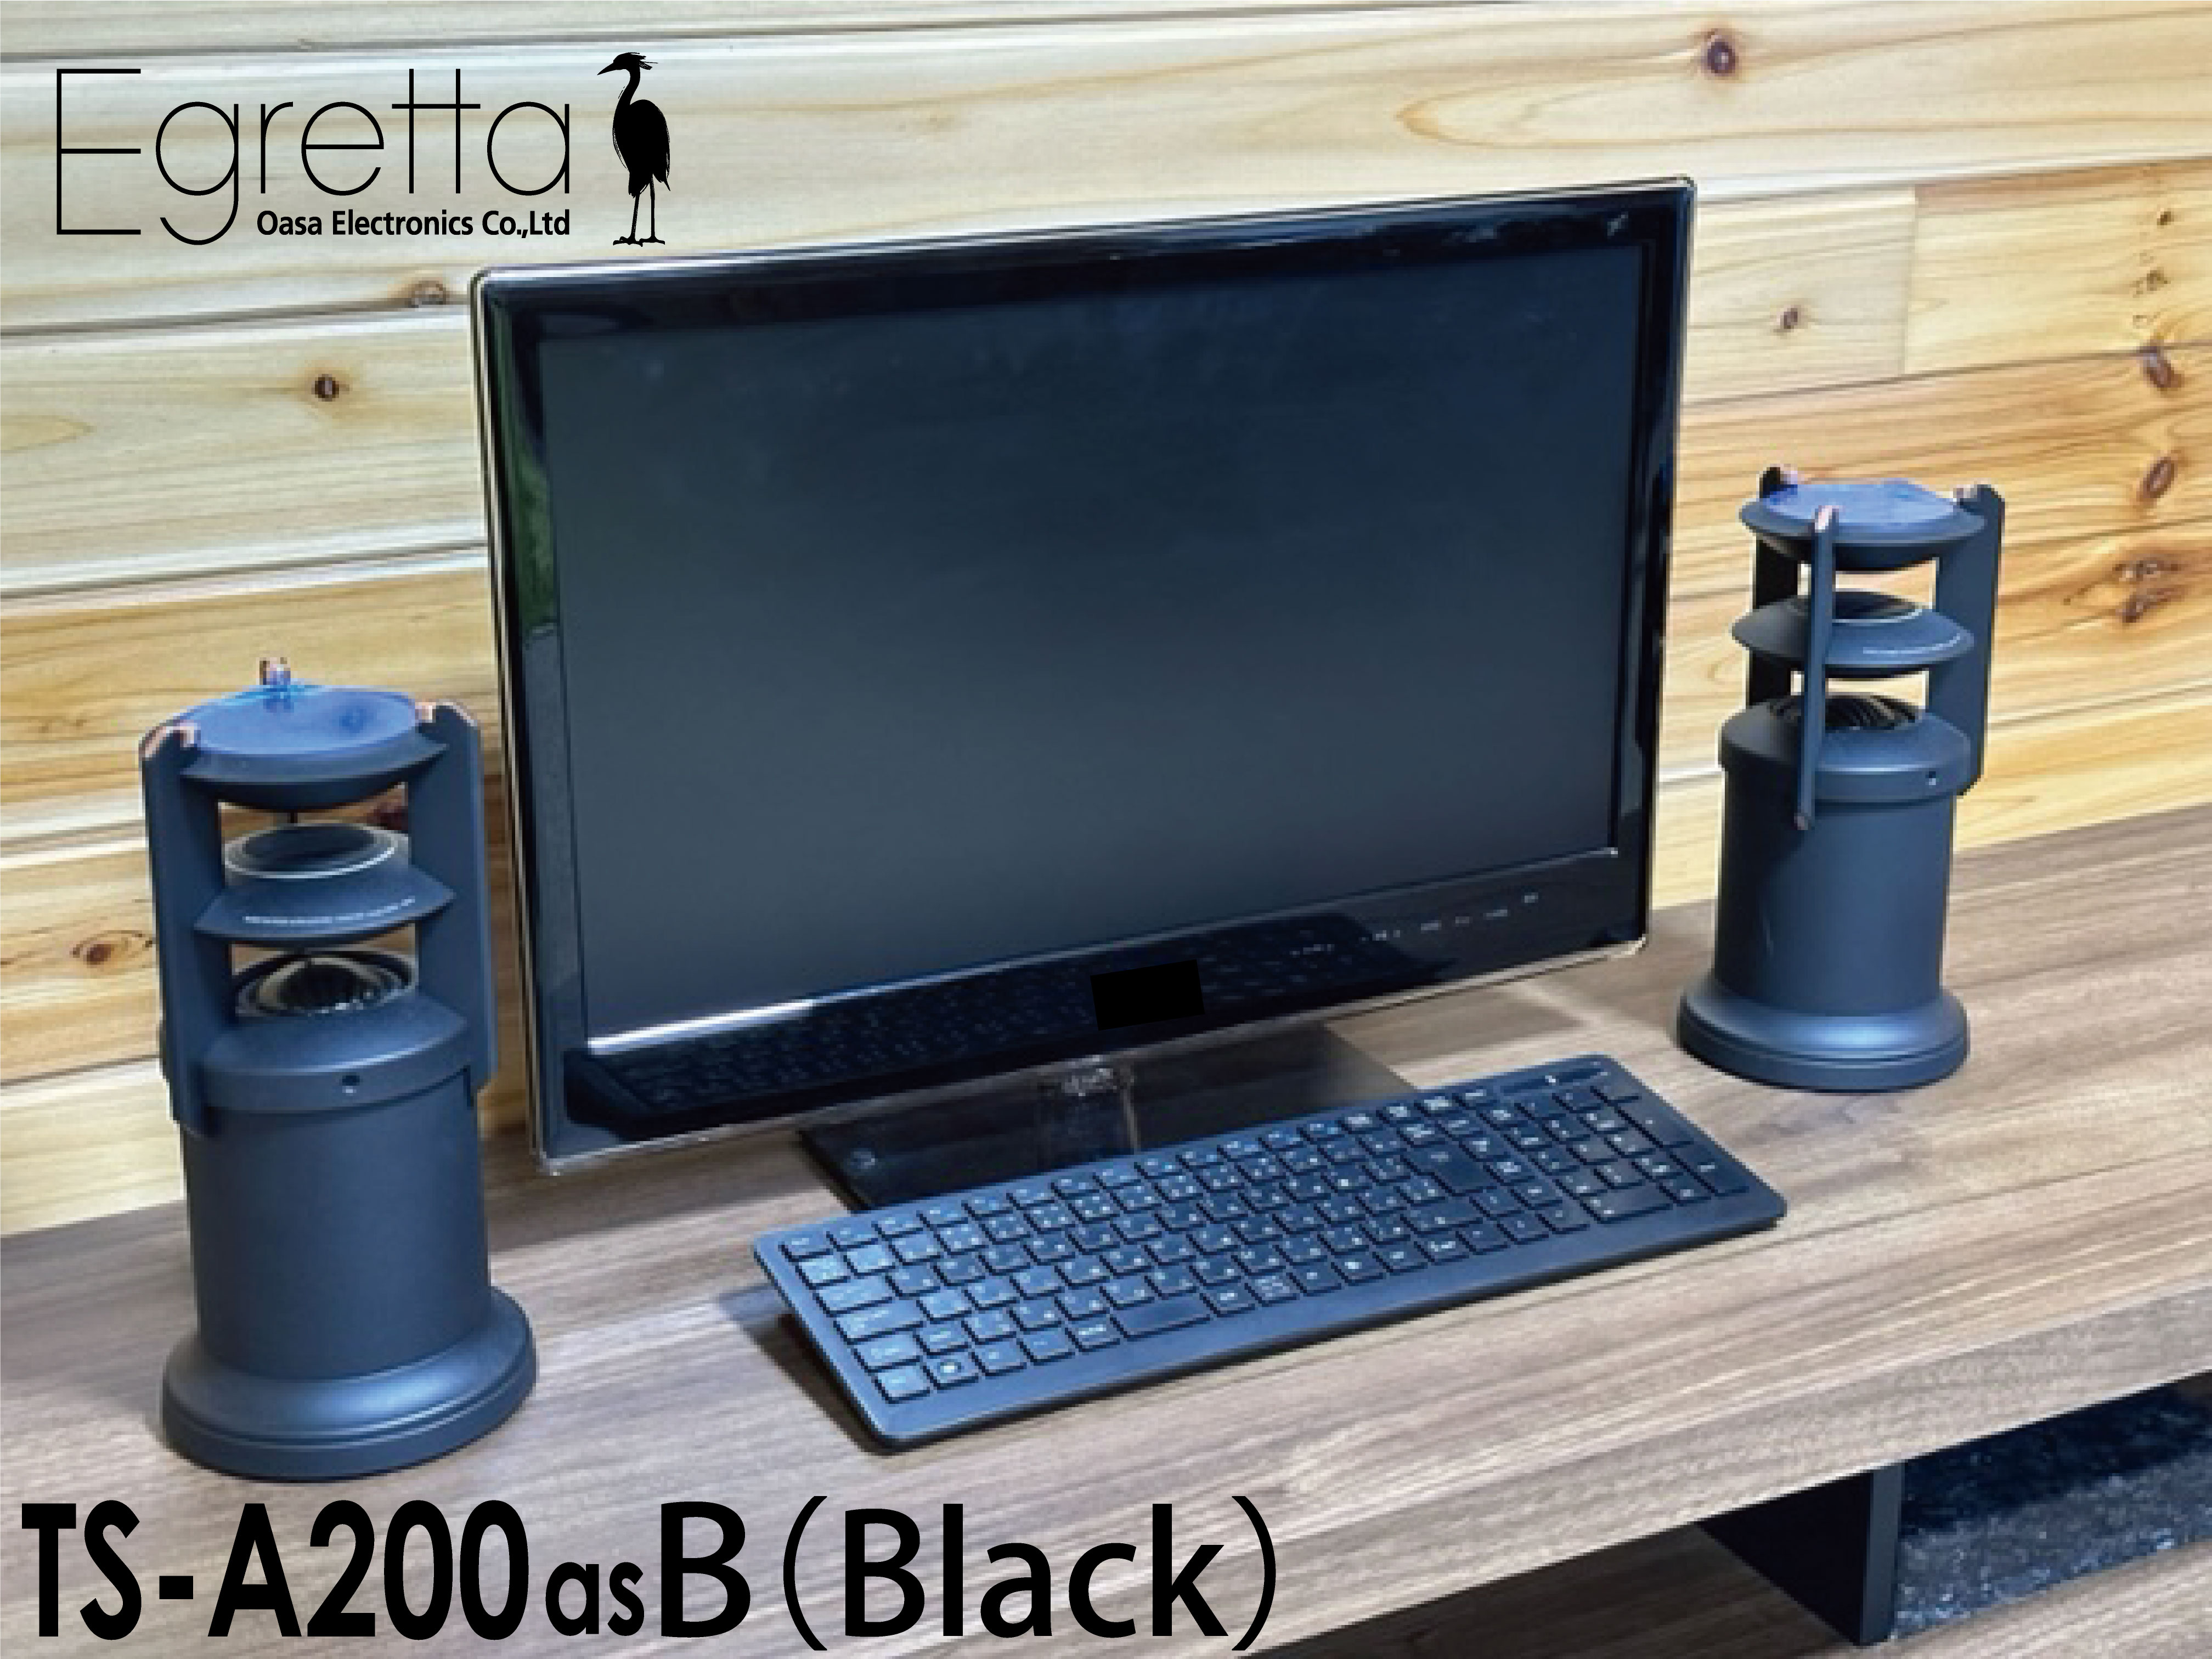 日本オーダー スピーカー デスクトップサイズ Egretta エグレッタ TS-A200asB black ハイレゾ対応 アンプ内蔵 全方位ステレオスピーカー PC インテリア リビング 新築